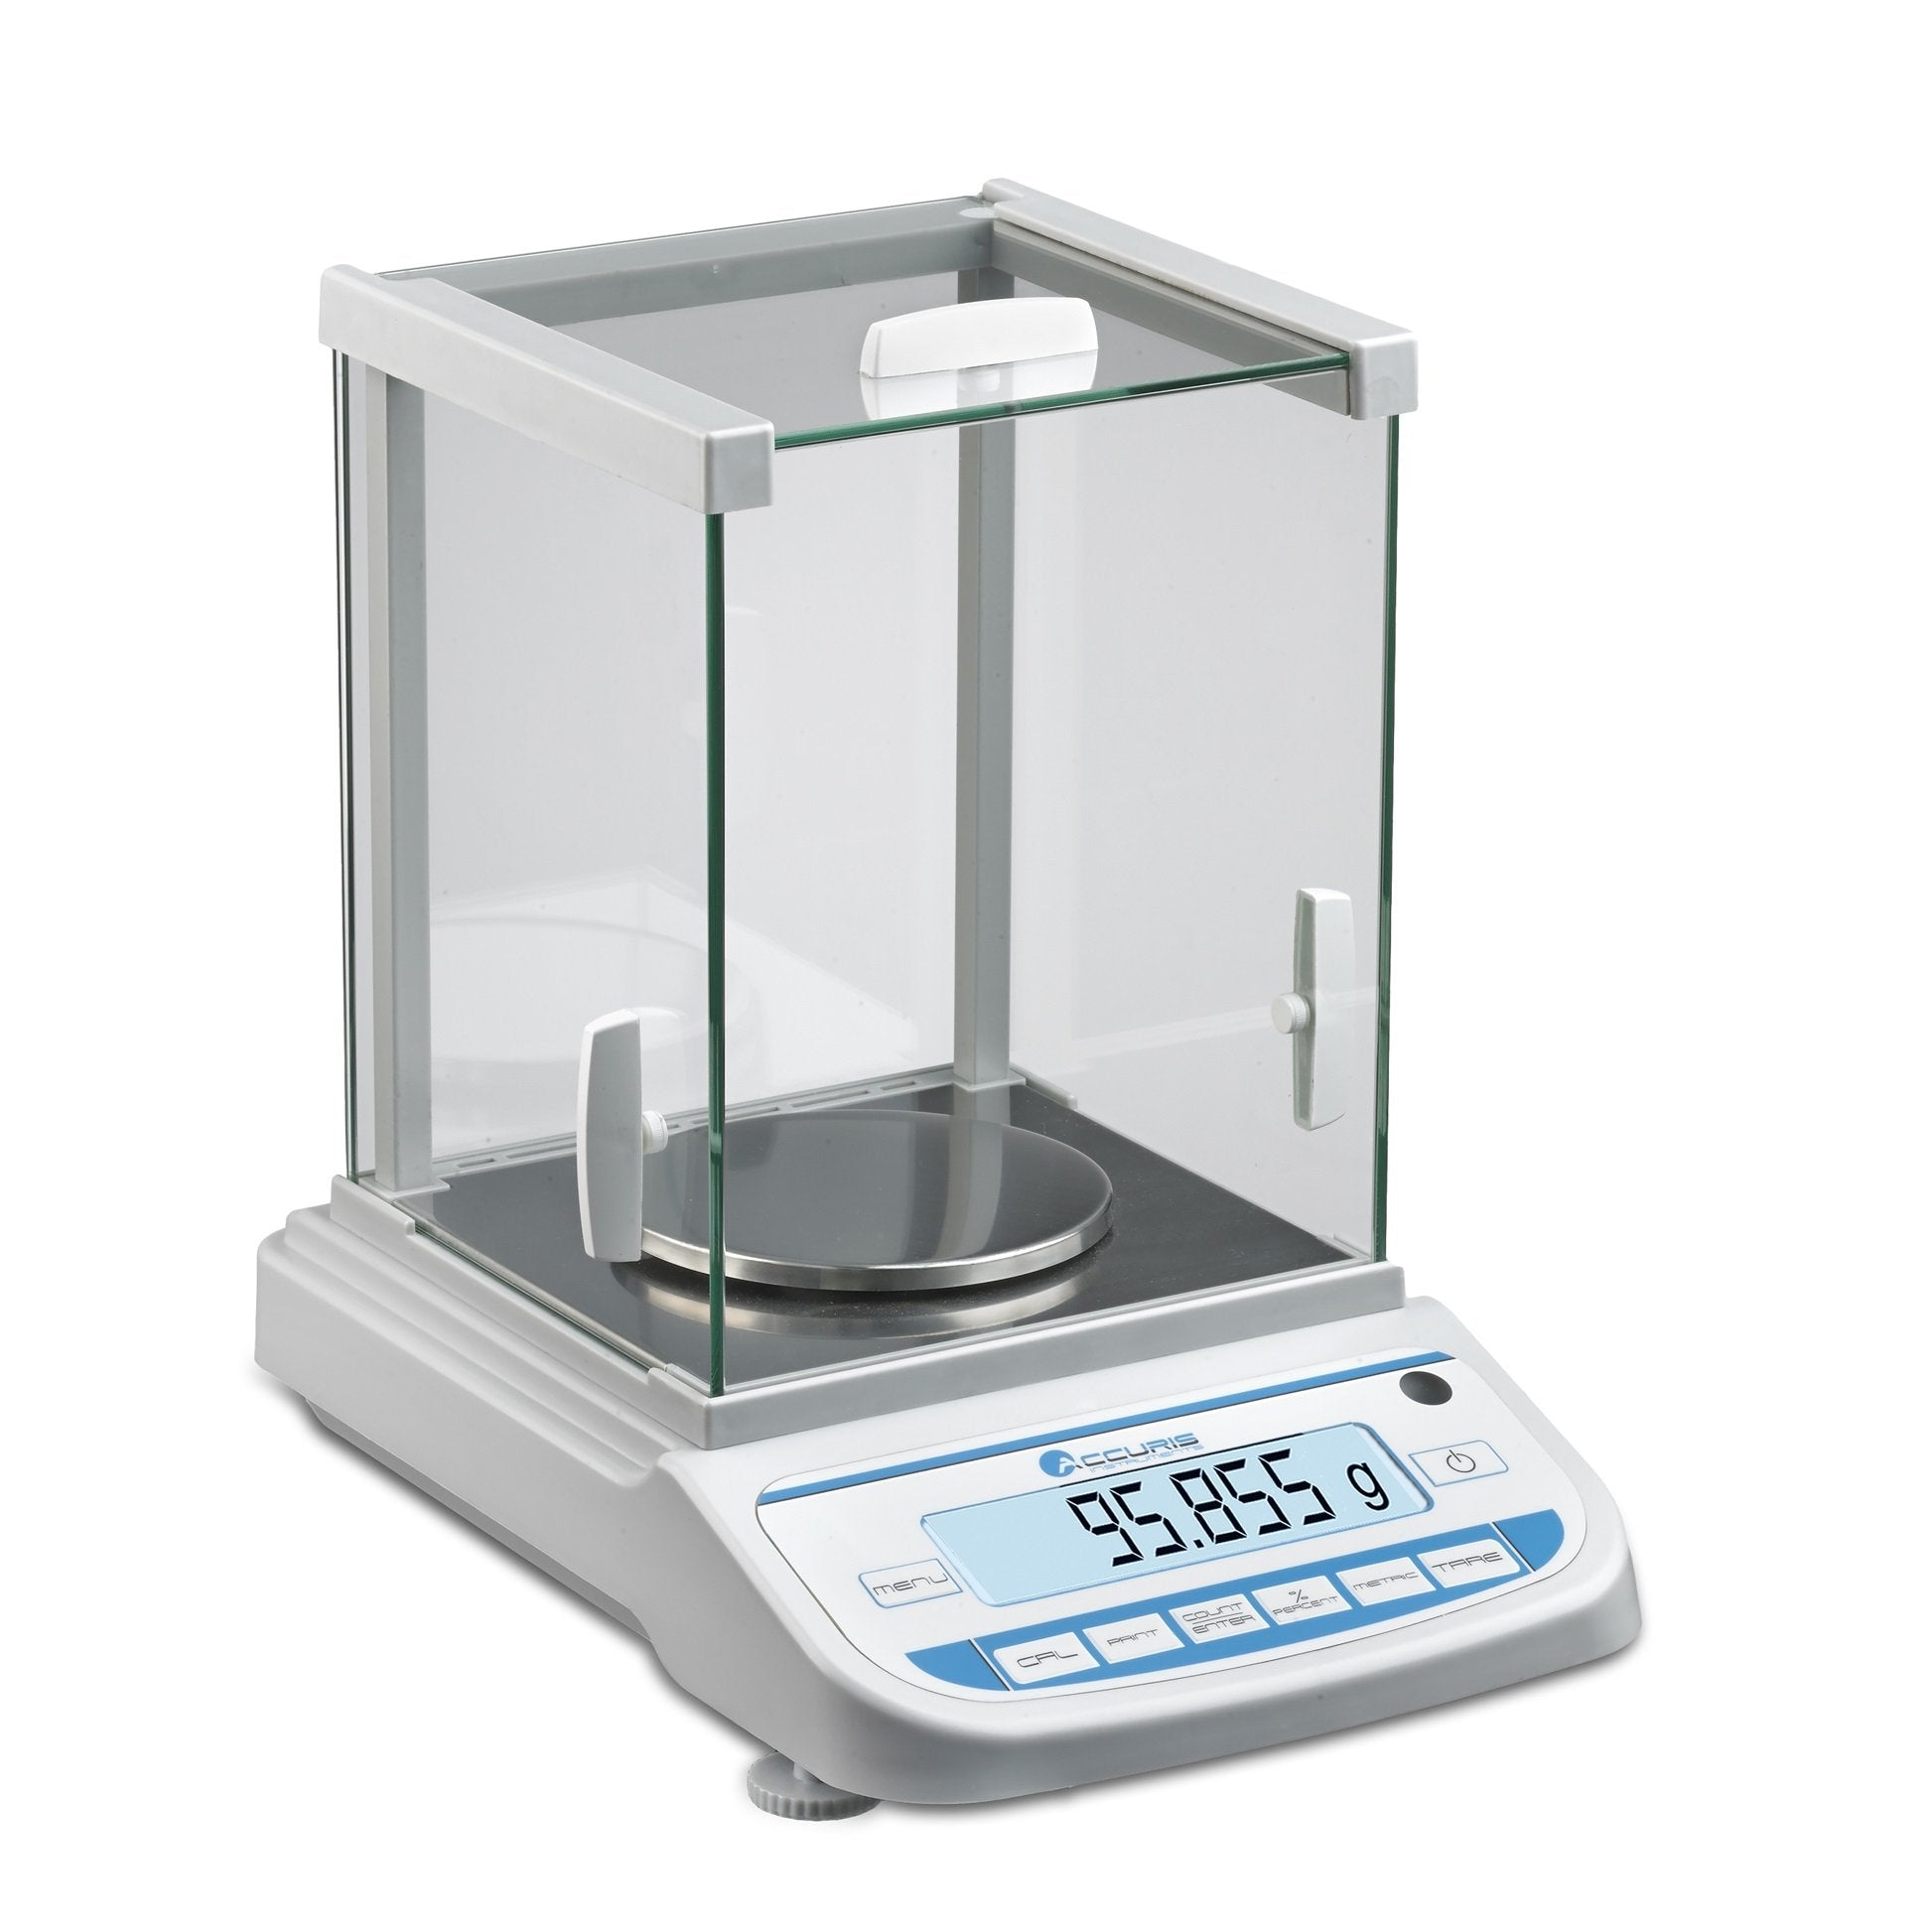 Accuris W3200-500 Precision Balance, 500 grams, readability 0.001grams, 115V